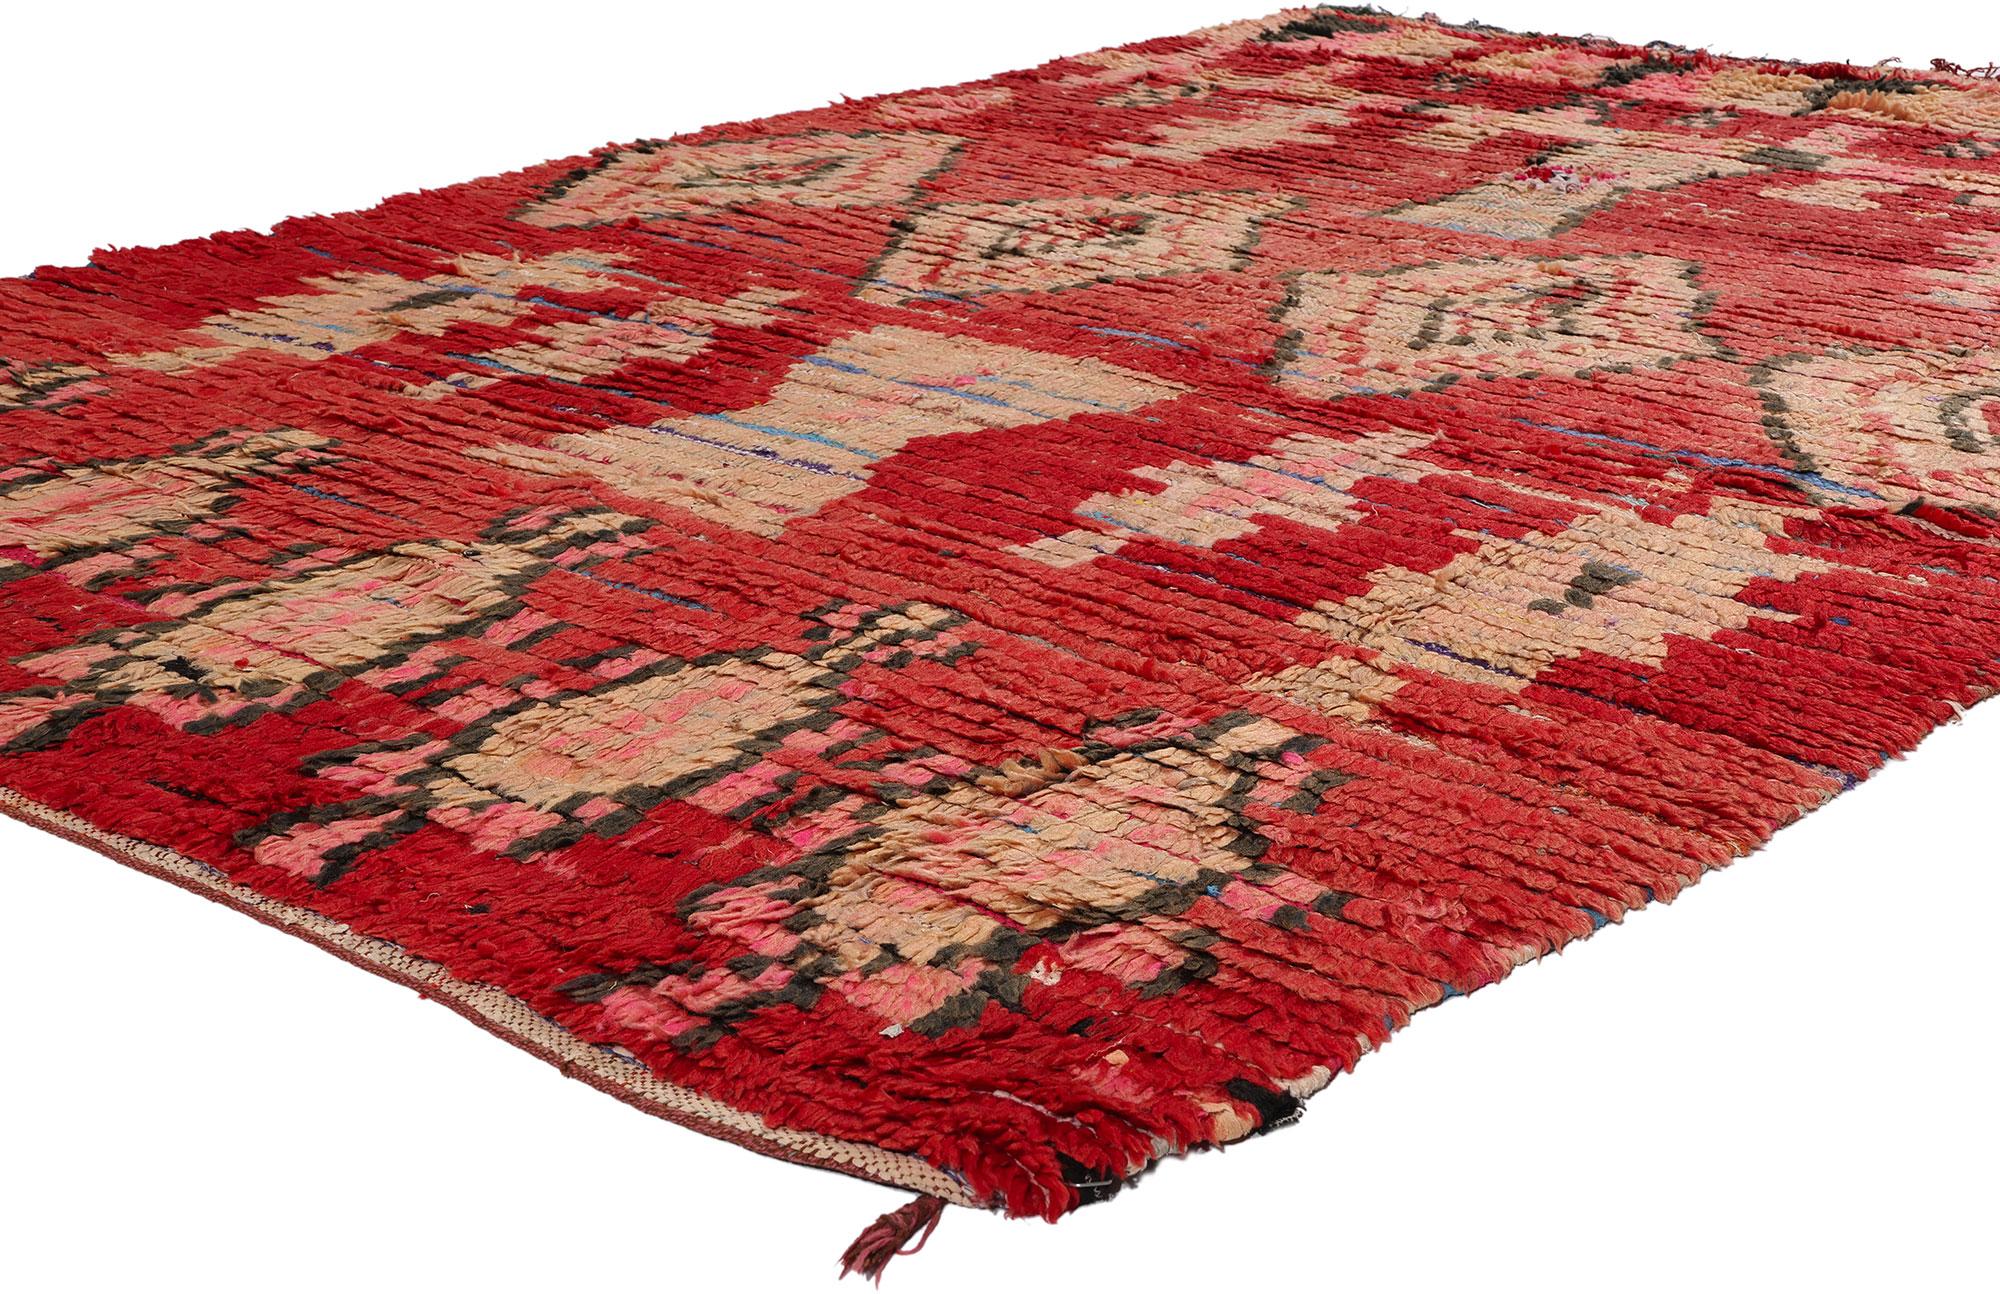 21766 Vintage Rot Boujad Boucherouite Marokkanischer Teppich, 05'03 x 07'06. Der Boujad-Teppich oder Boujad-Boucherouite-Teppich erzählt eine faszinierende Geschichte von Stammeszauber und nachhaltiger Handwerkskunst, die aus der Region Boujad in